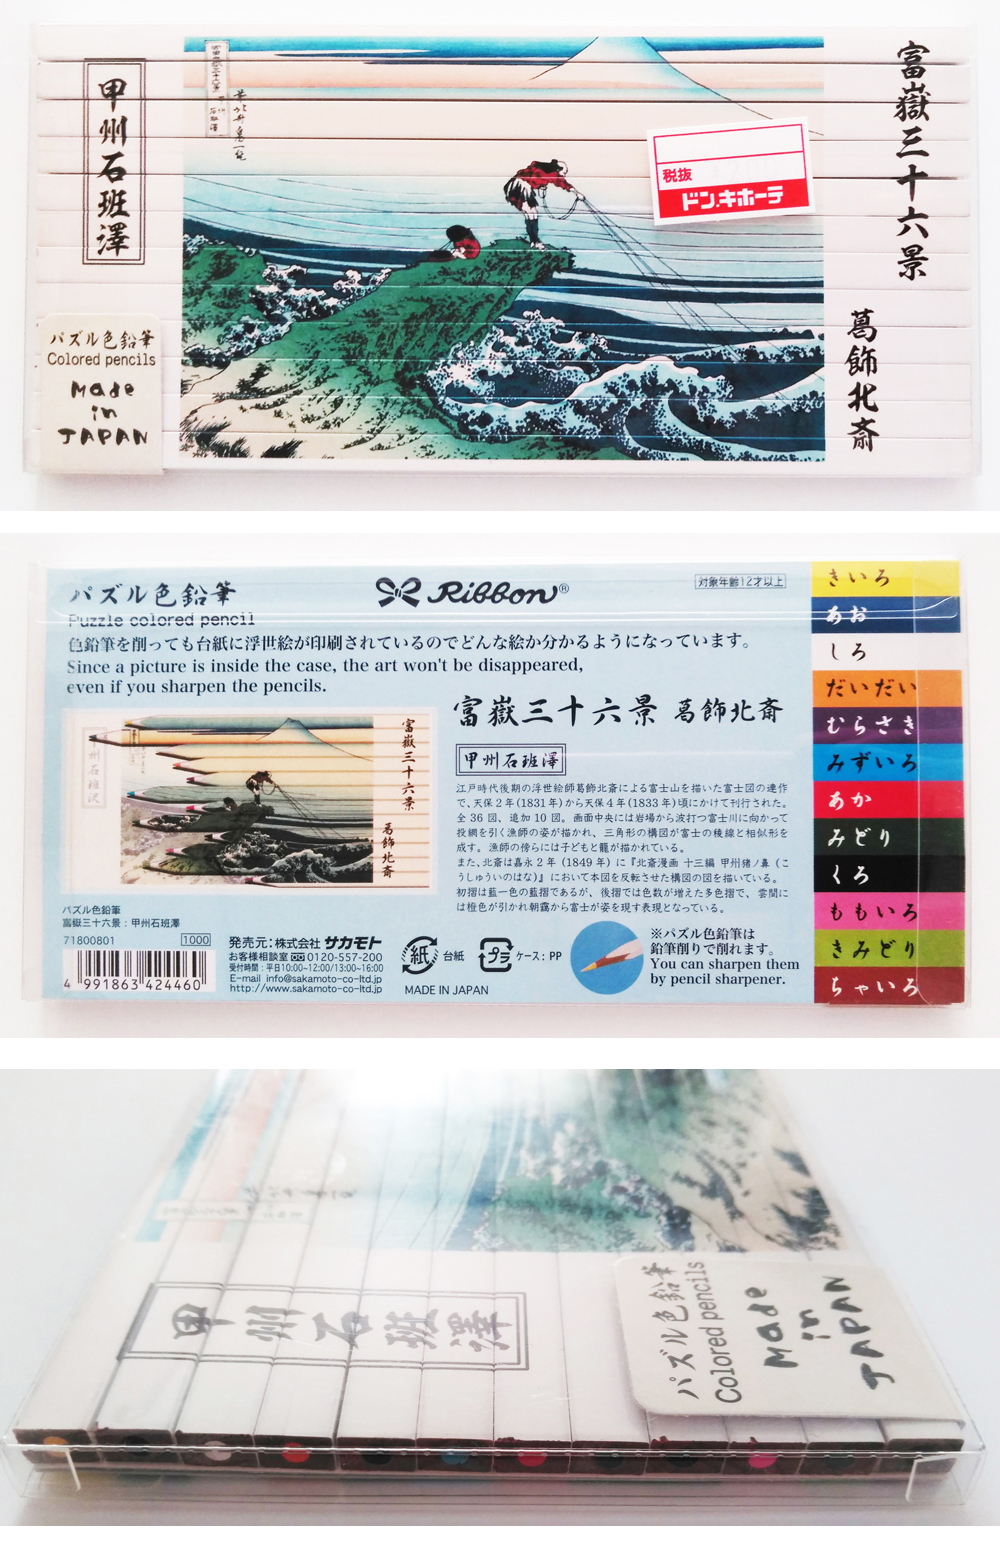 グッジョブ パズル色鉛筆 富嶽三十六景 提案japan 提案ジャパン